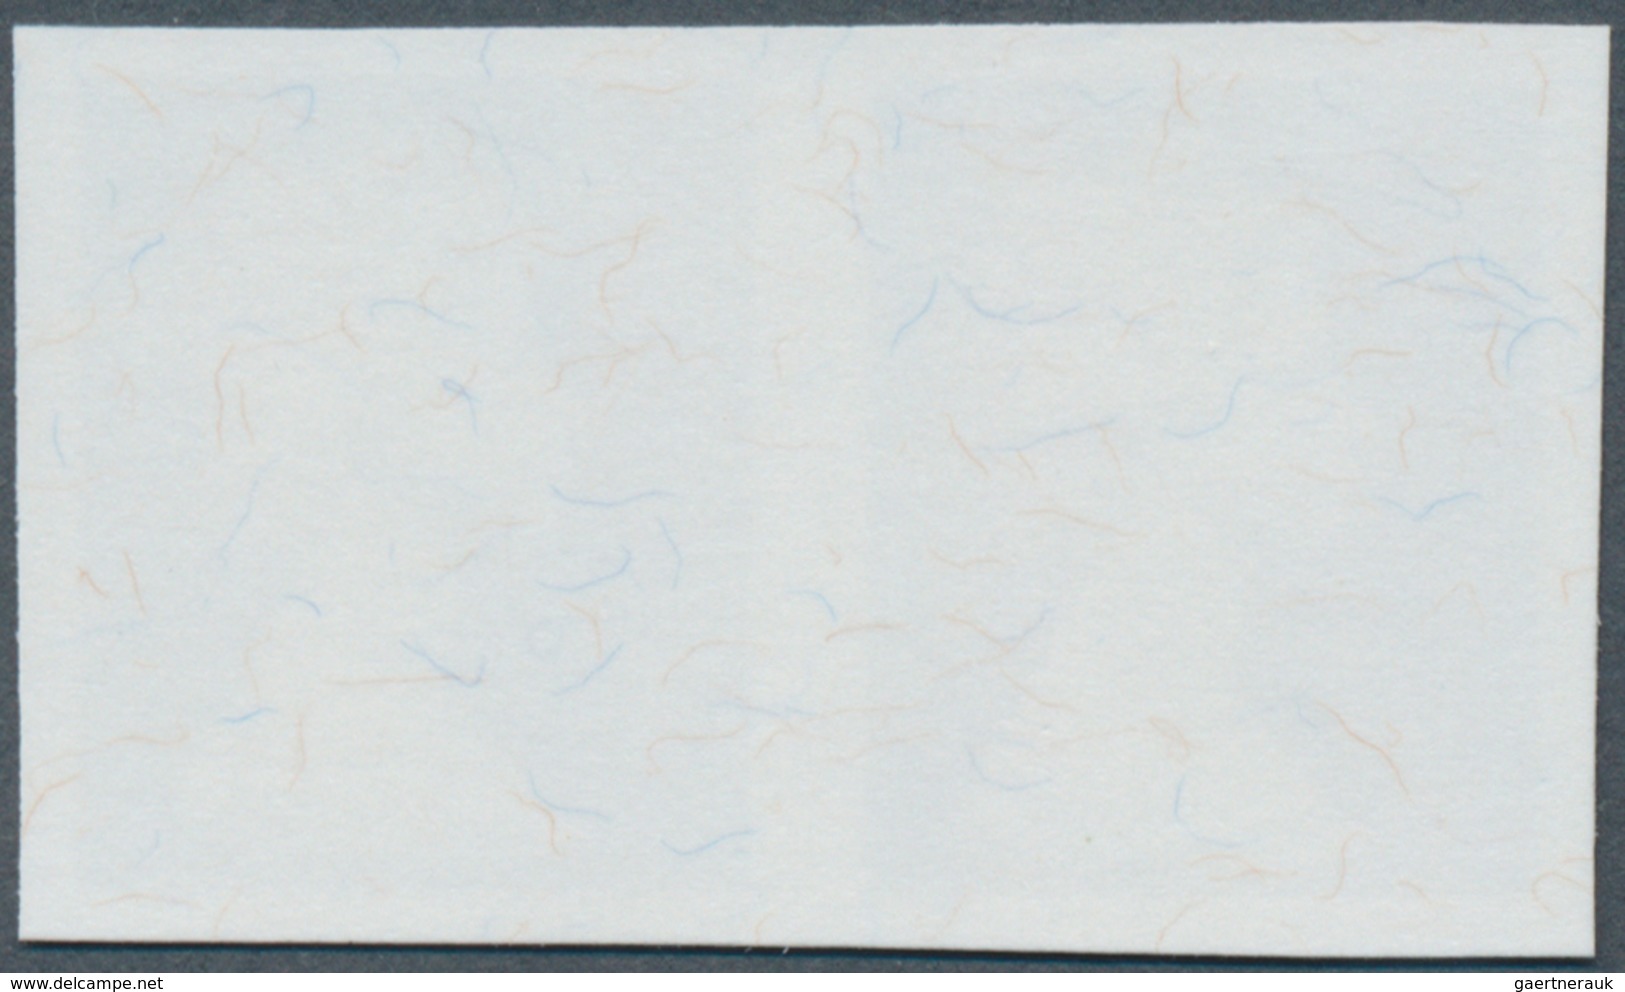 Großbritannien - Machin: 1997, Imperforate Proof In Issued Design Without Value On Gummed Paper, Hor - Machin-Ausgaben